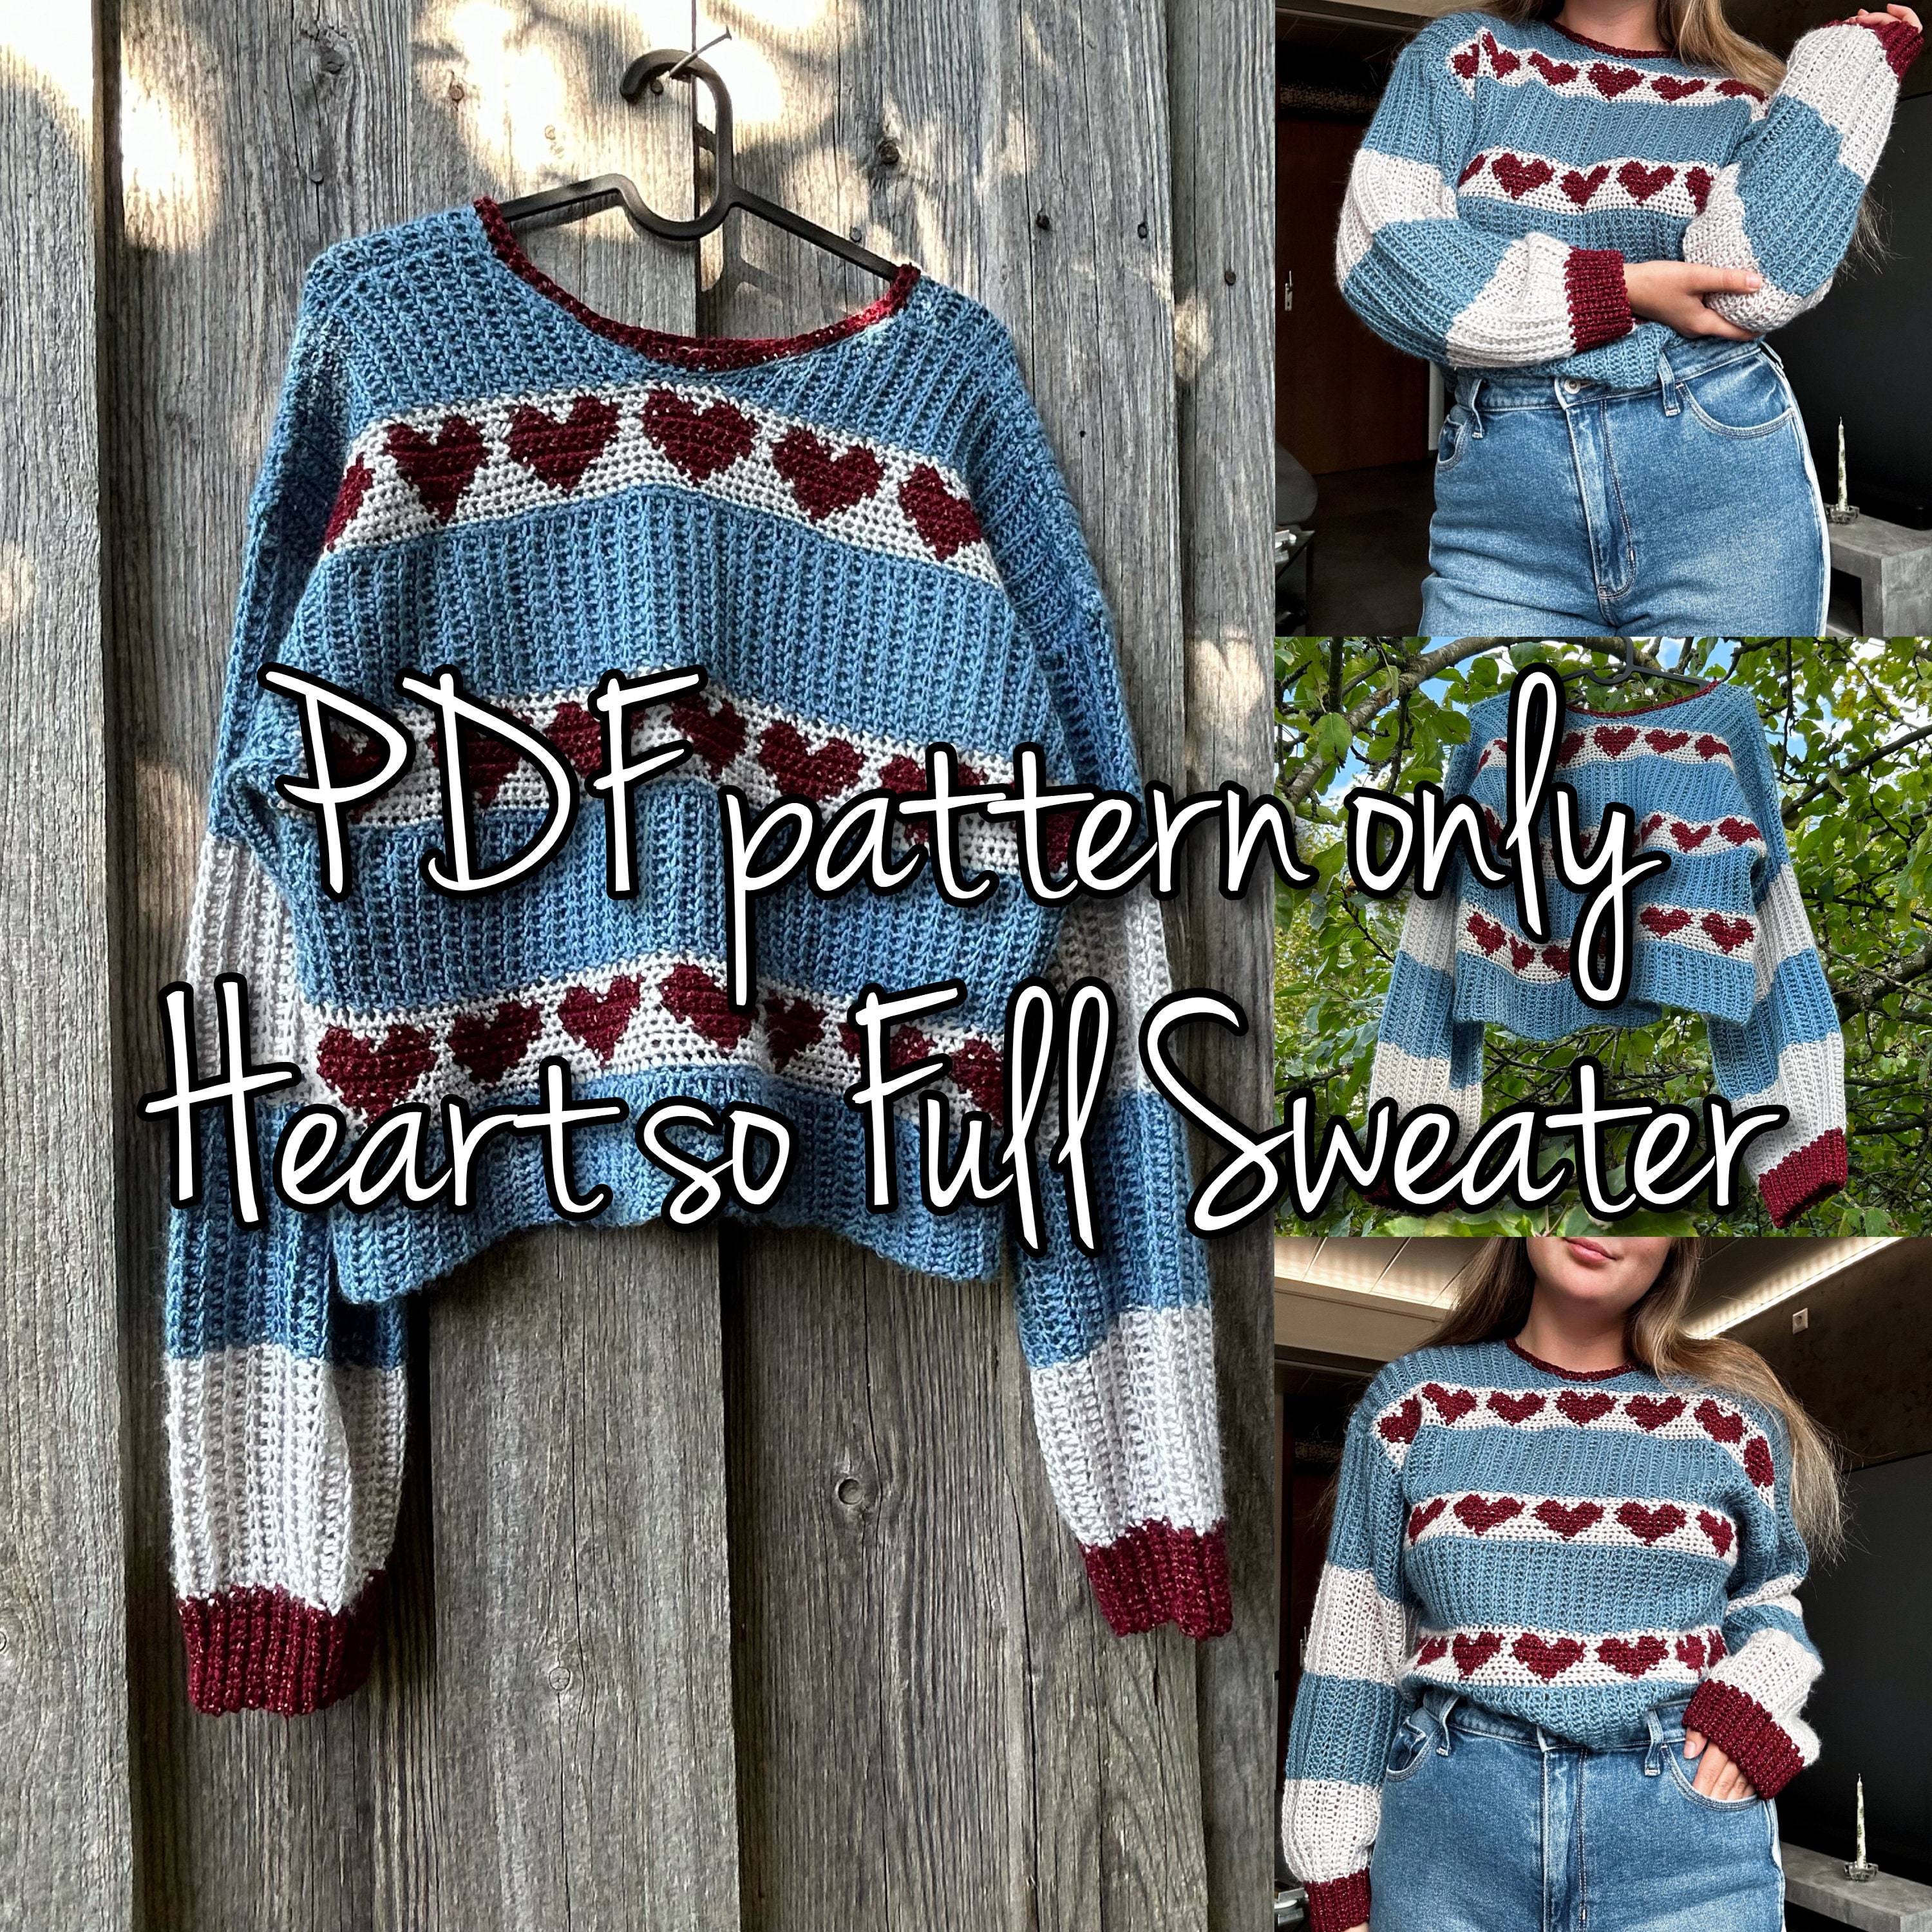 Open Heart Top Crochet Pattern PDF, Crochet Top, Heart Top, Crocheted Top,  Crochet Heart Top Pattern, Heart Crochet Top Pattern 